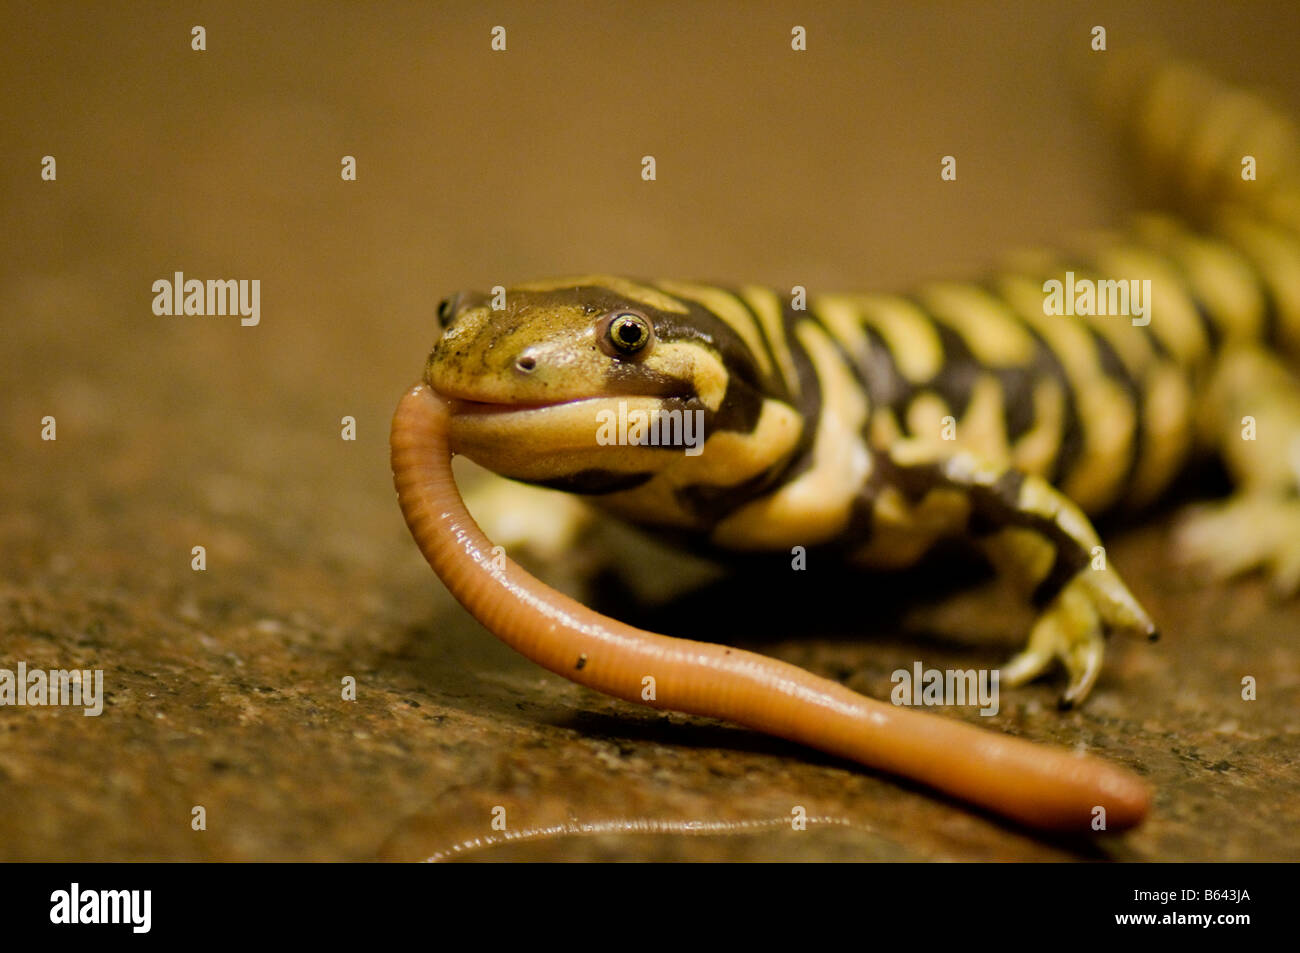 Un primer plano de una salamandra tigre empatar sonriendo, mientras disfruta comiendo una cena de lombriz. Foto de stock